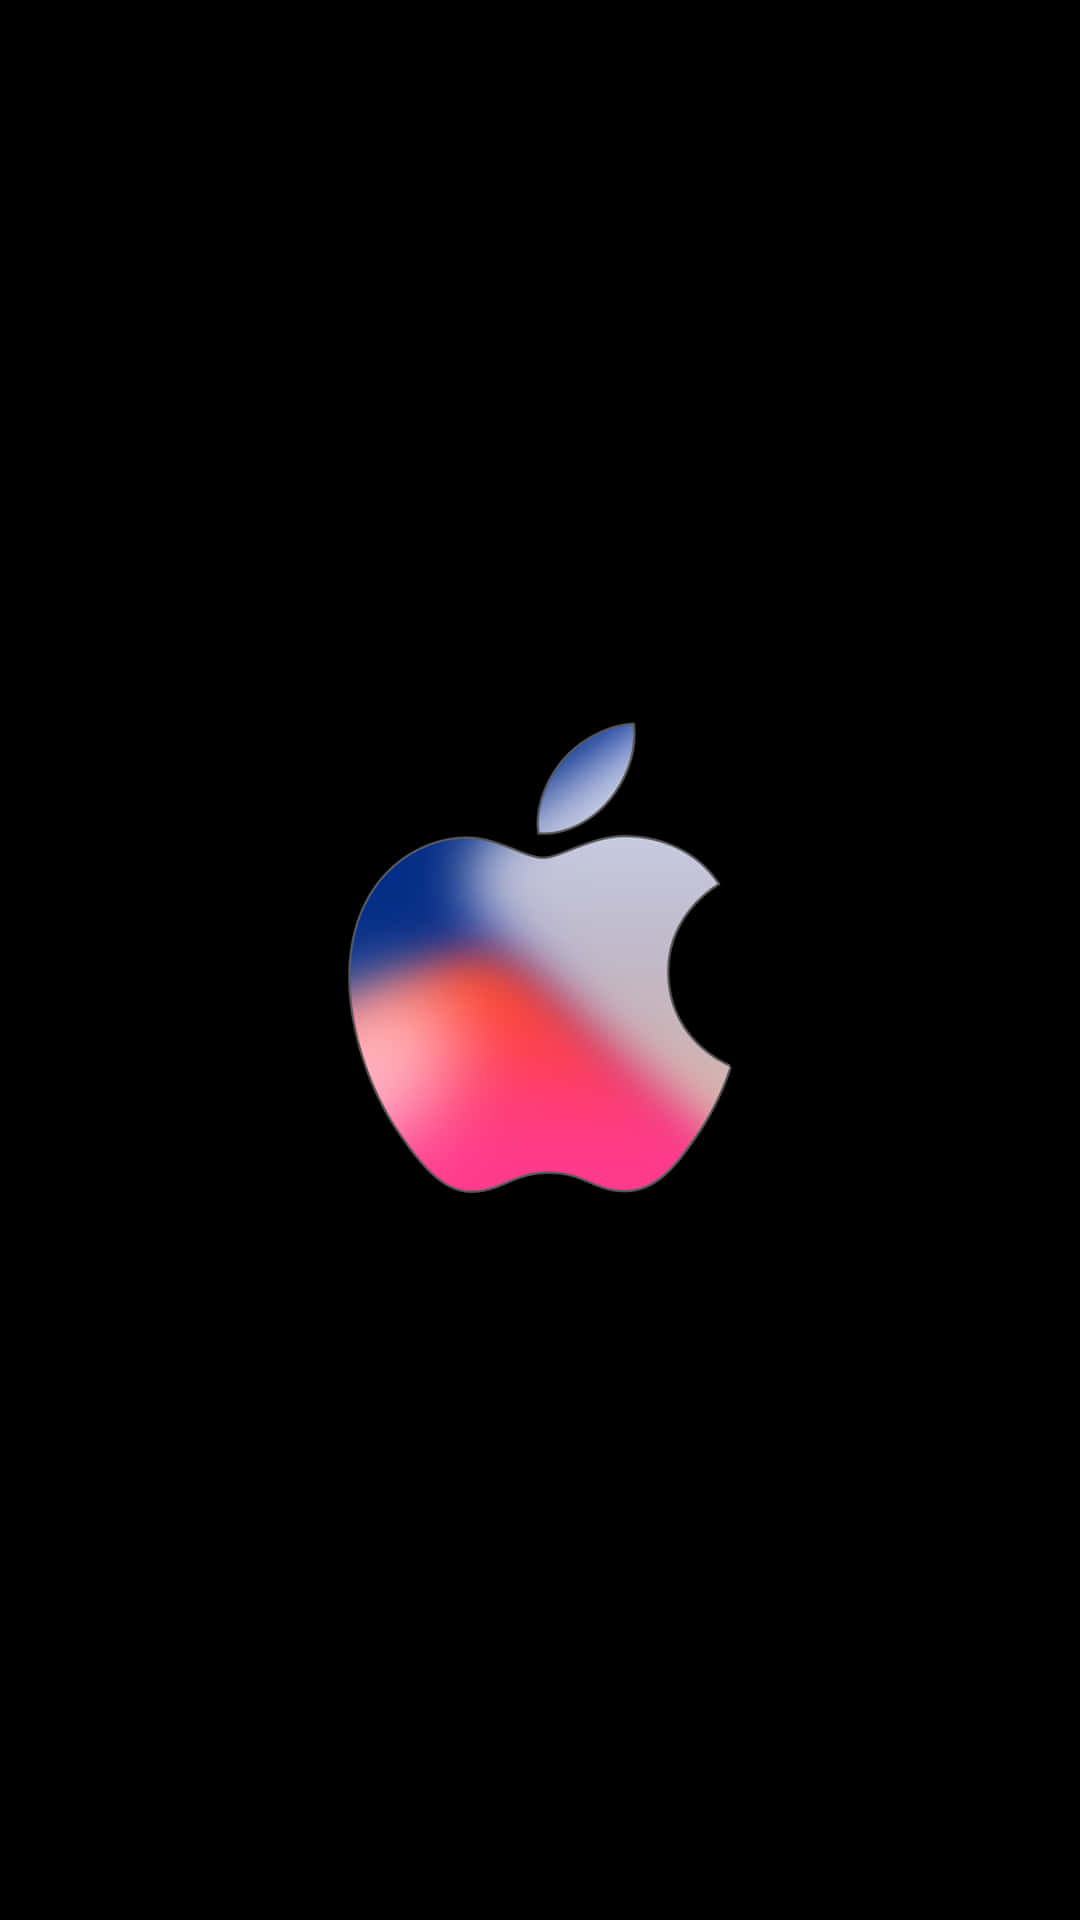 Blauund Pinkes Logo Erstaunliches Apple Hd Iphone Wallpaper